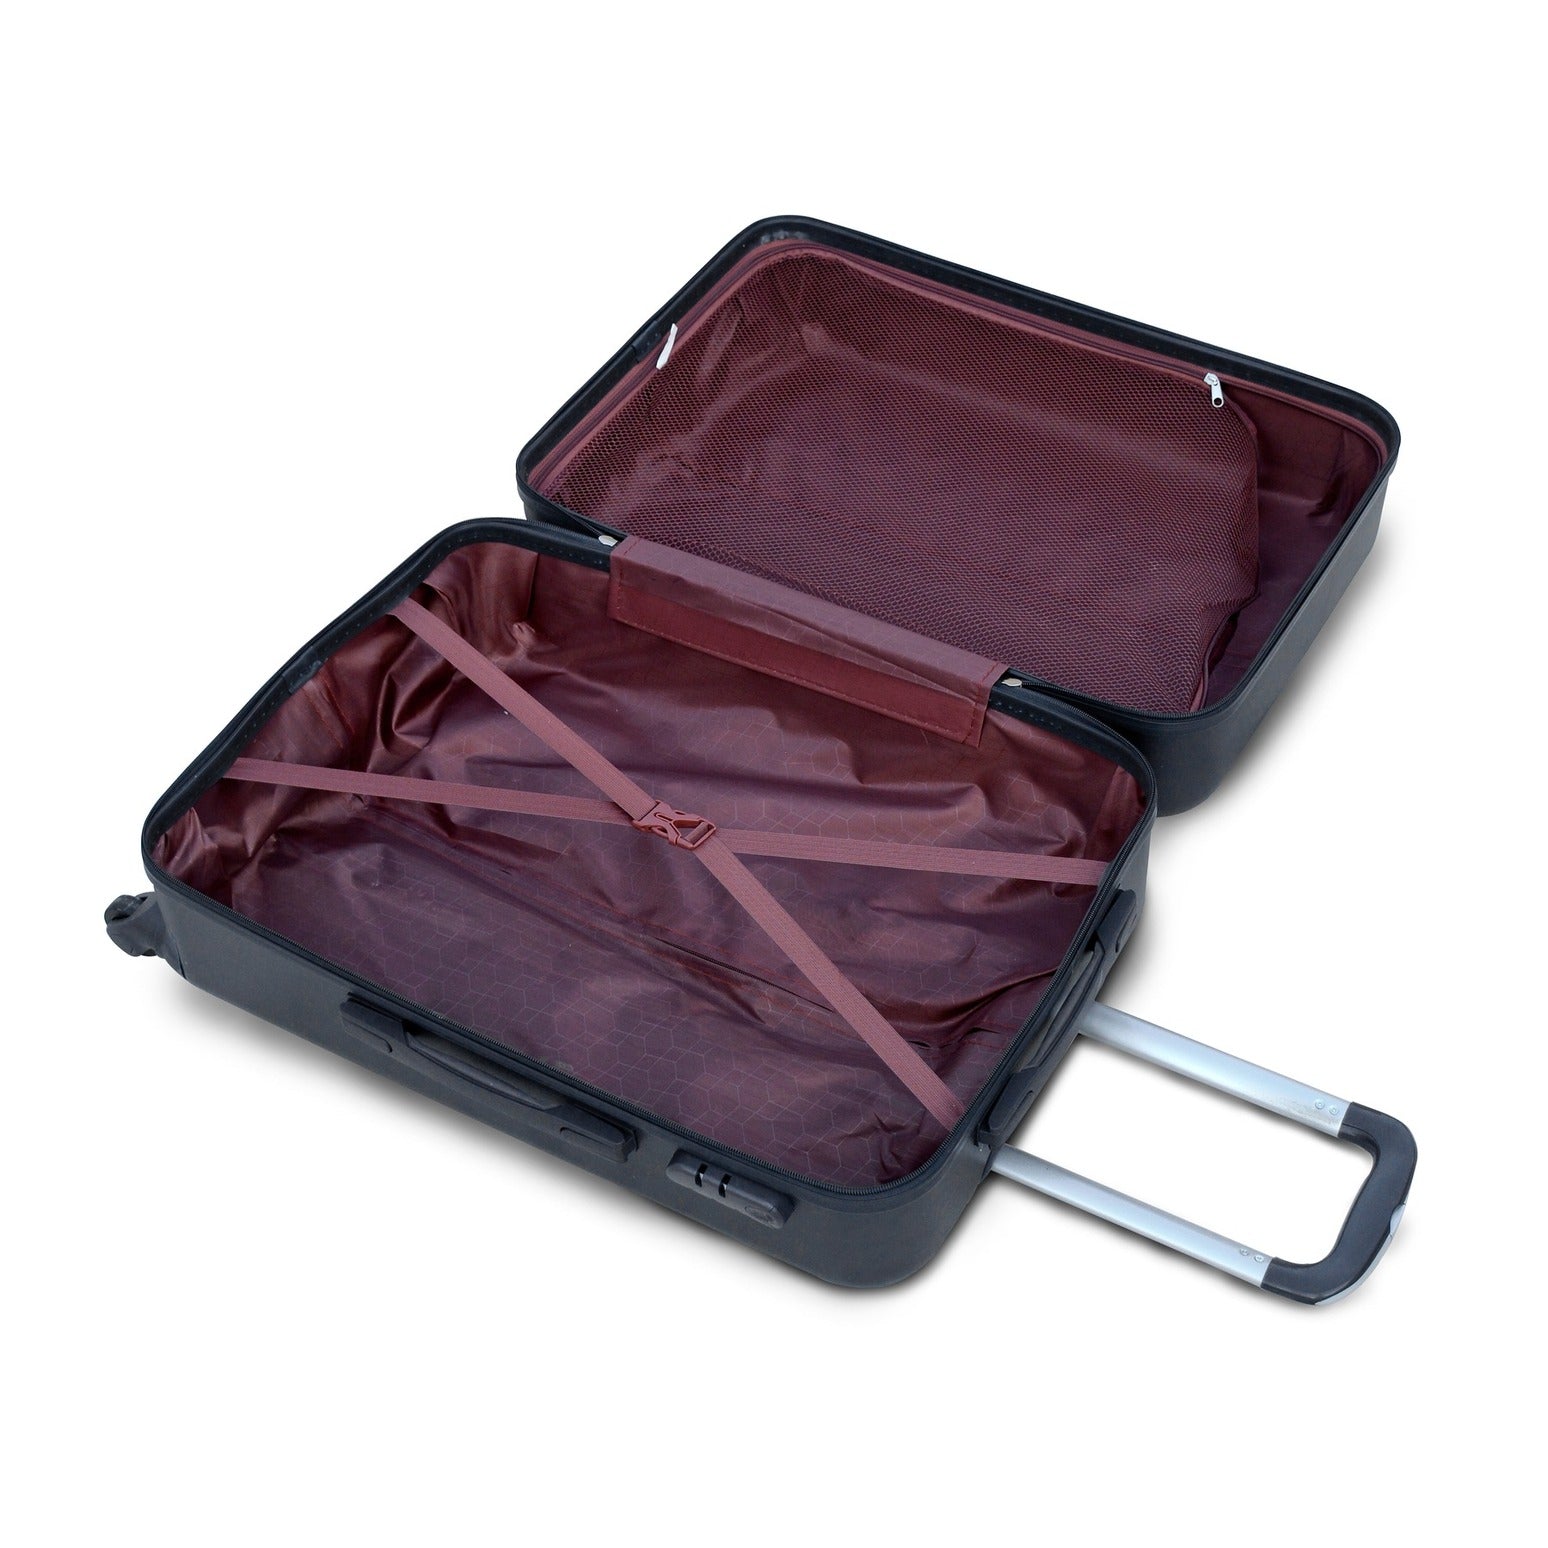 28" Black Colour Diamond Cut ABS Luggage Lightweight Hard Case Trolley Bag | 2 Year Warranty